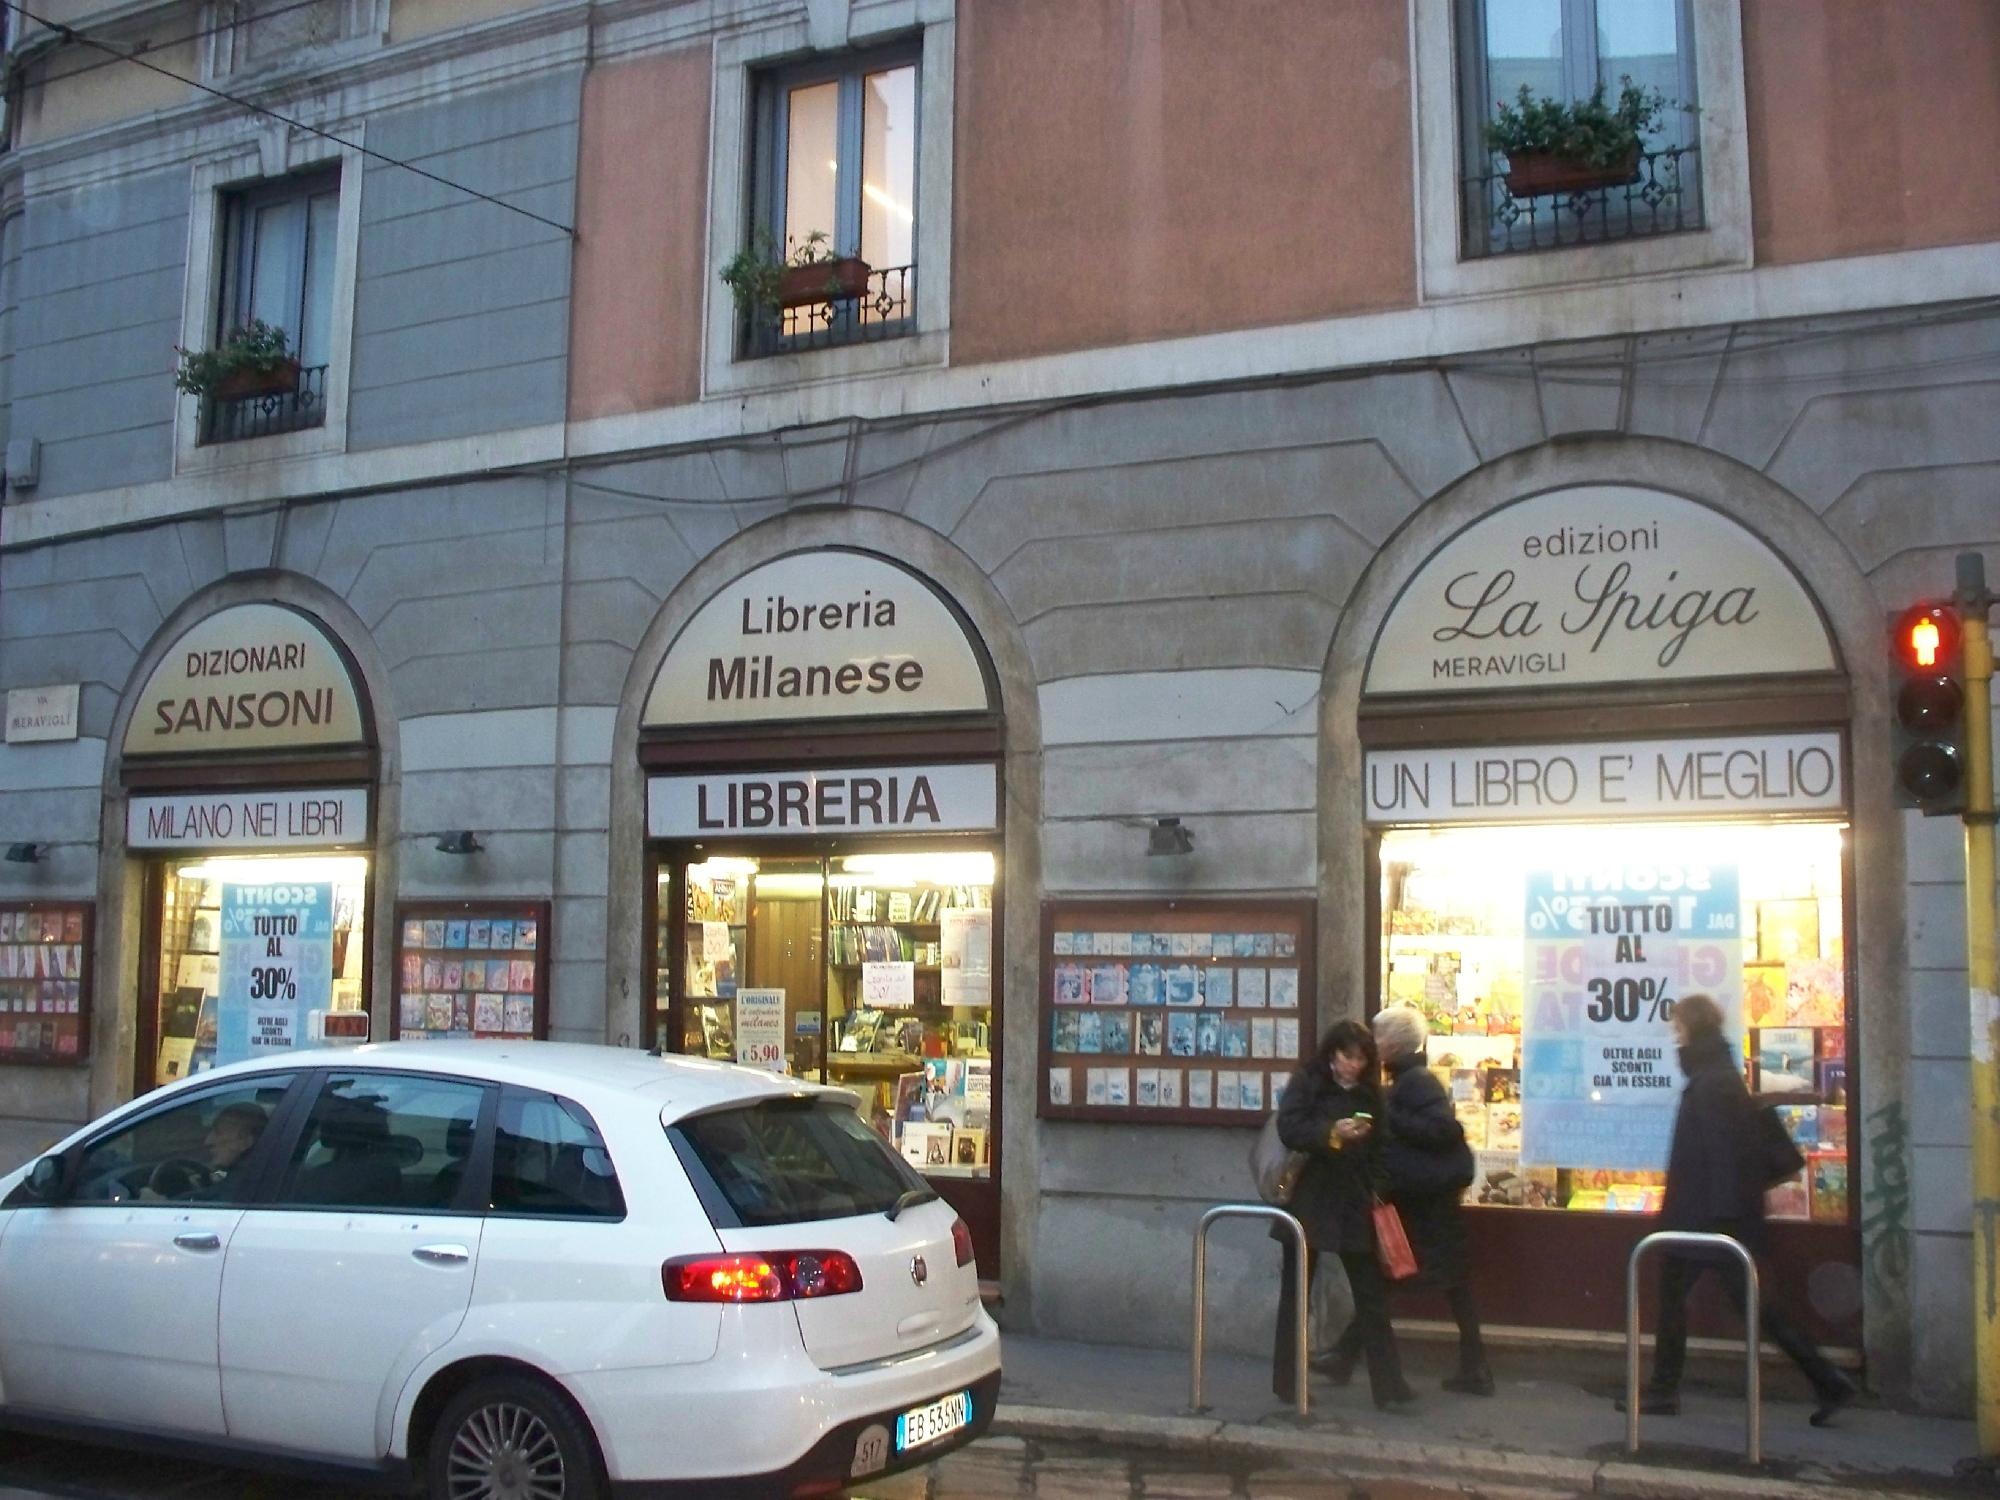 Libreria Milanese